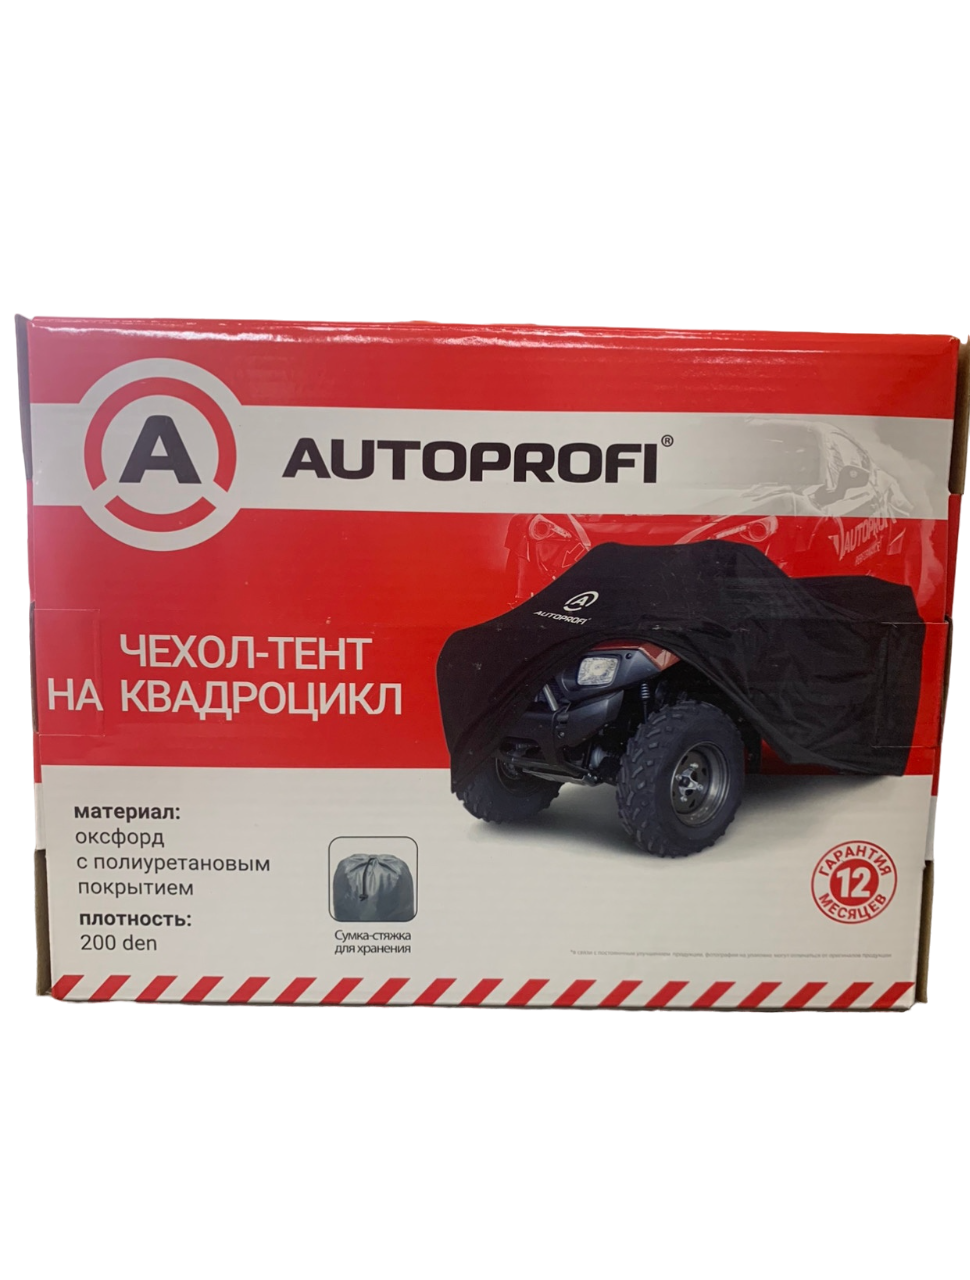 Чехол для квадроцикла, Autoprofi, ATV-200 (220), 220*125*85 см.